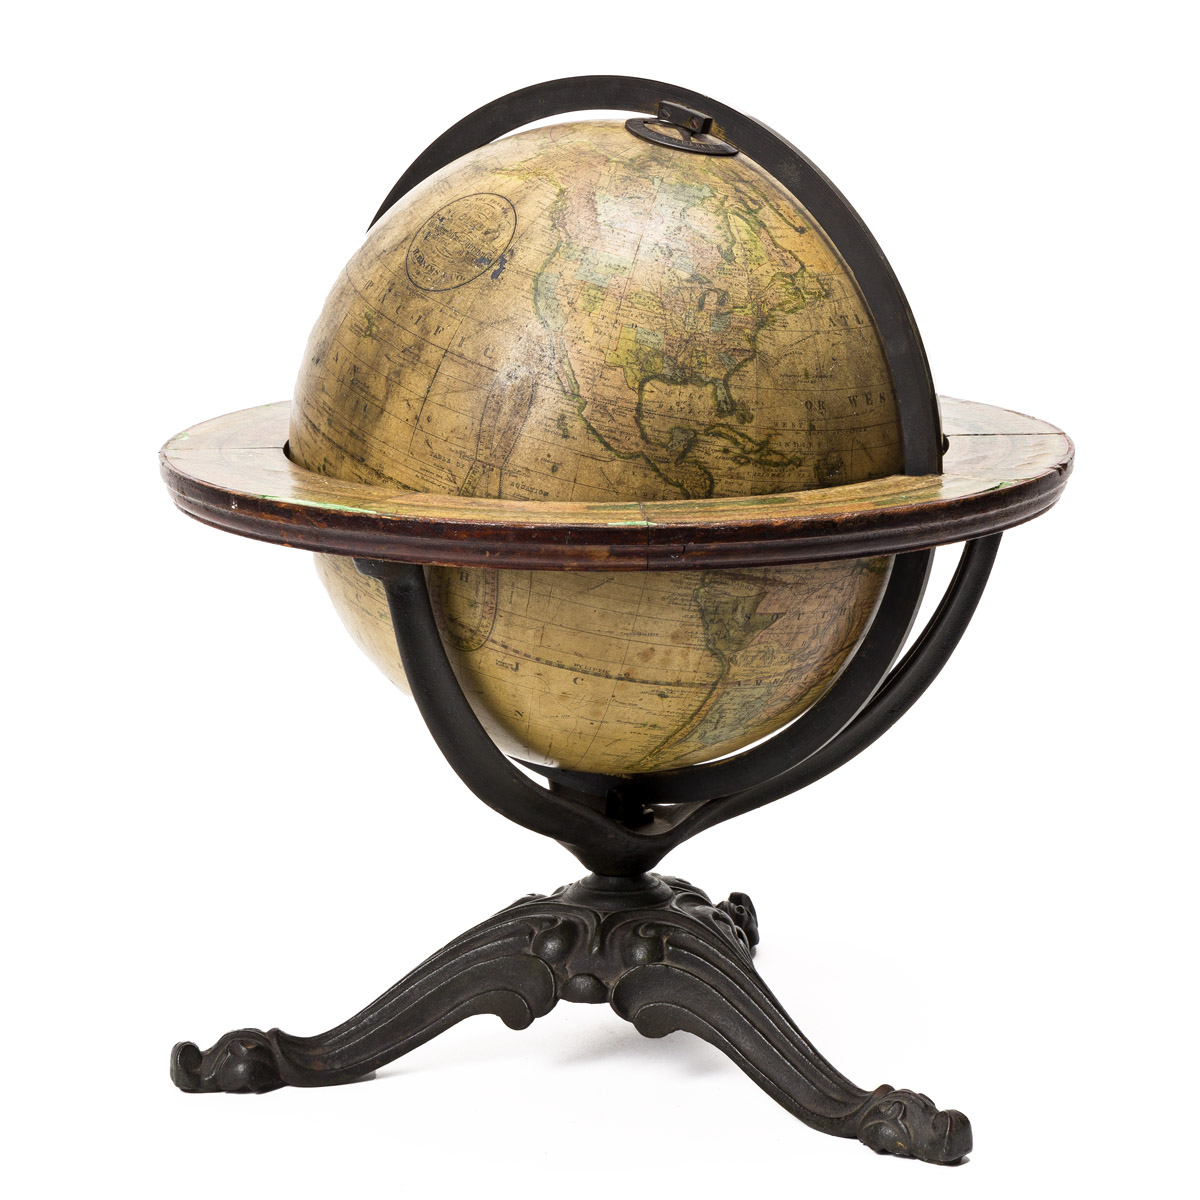 The Franklin Terrestrial Globe.